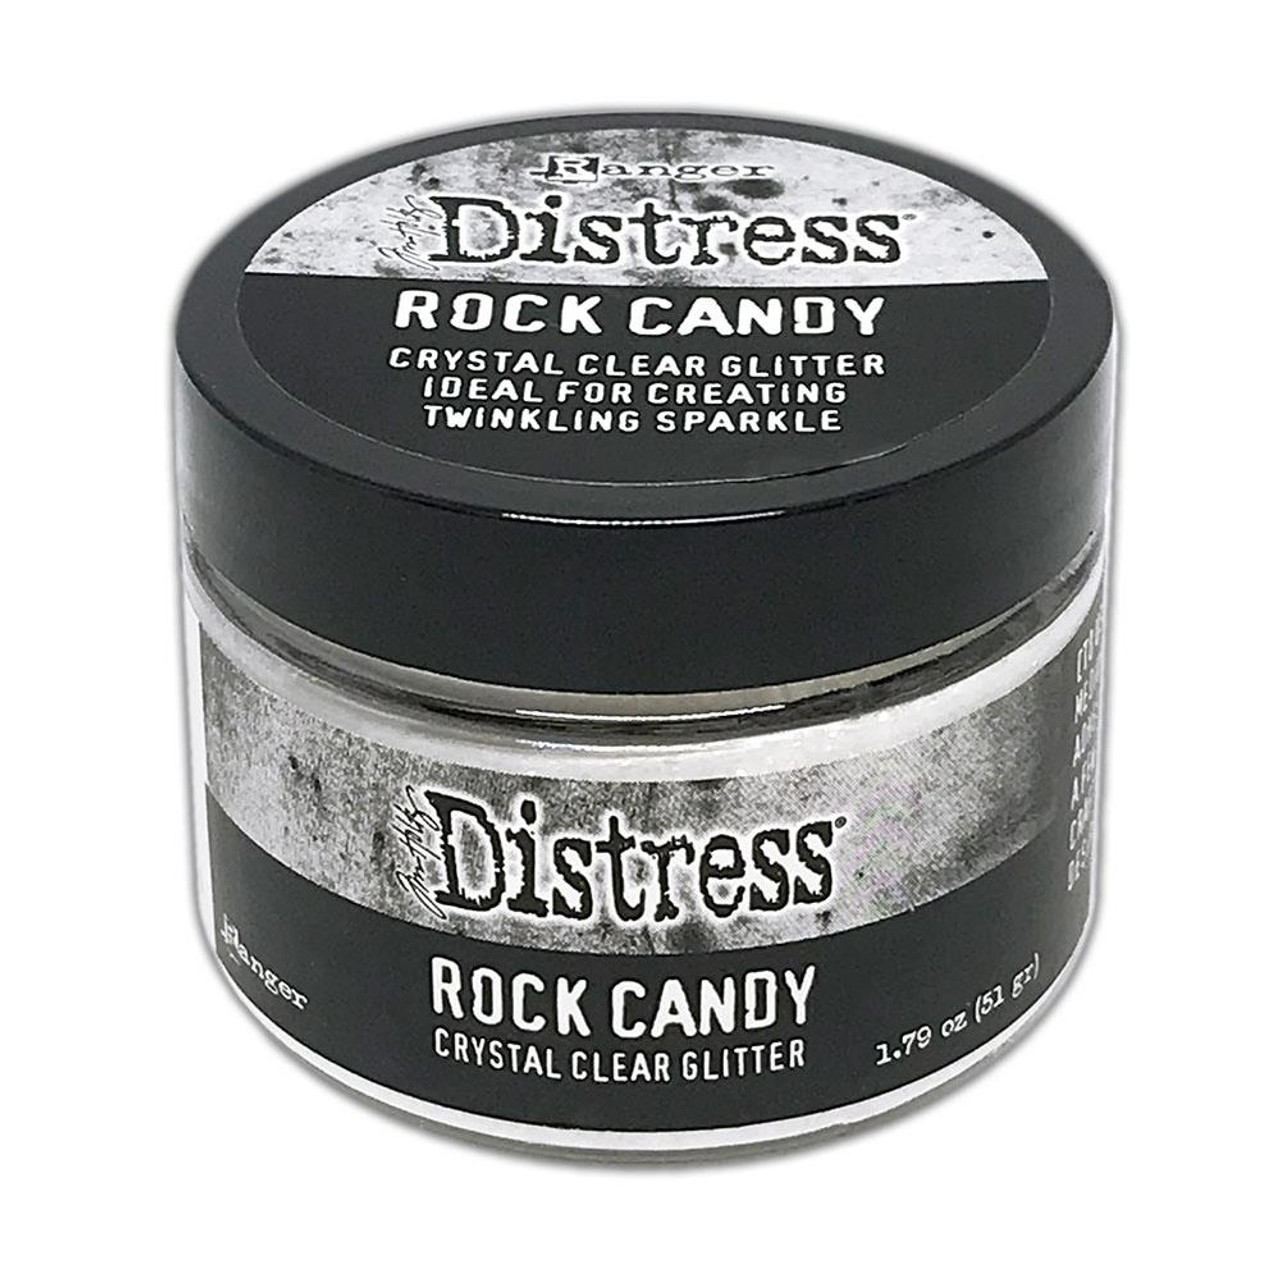 Tim Holtz Distress Effects - Rock Candy - 1.79oz